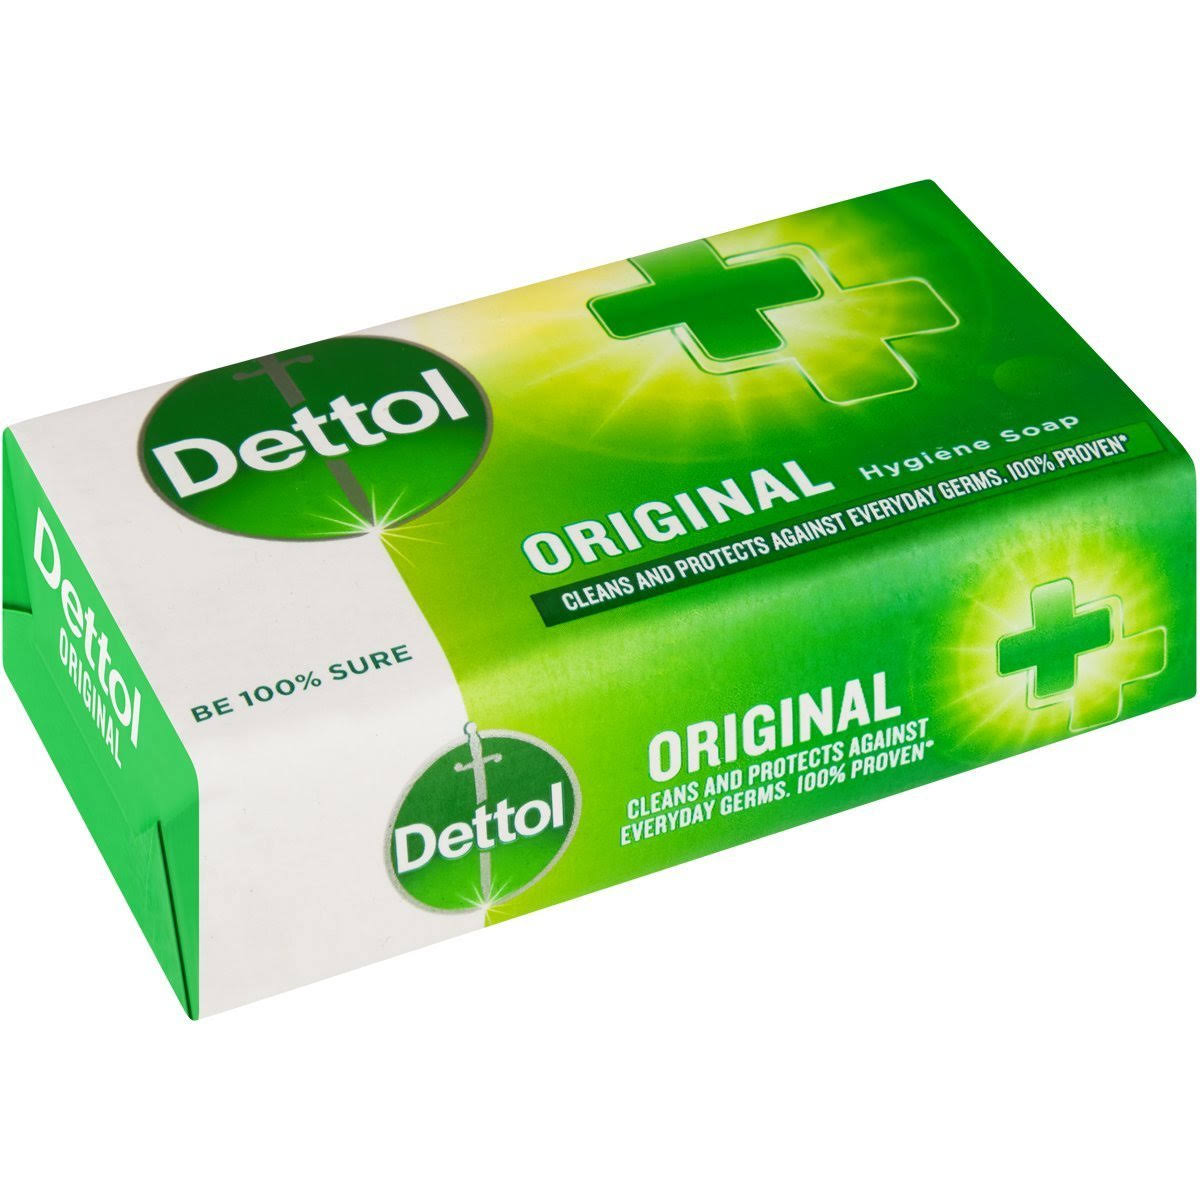 Dettol Soap - Original, 175g